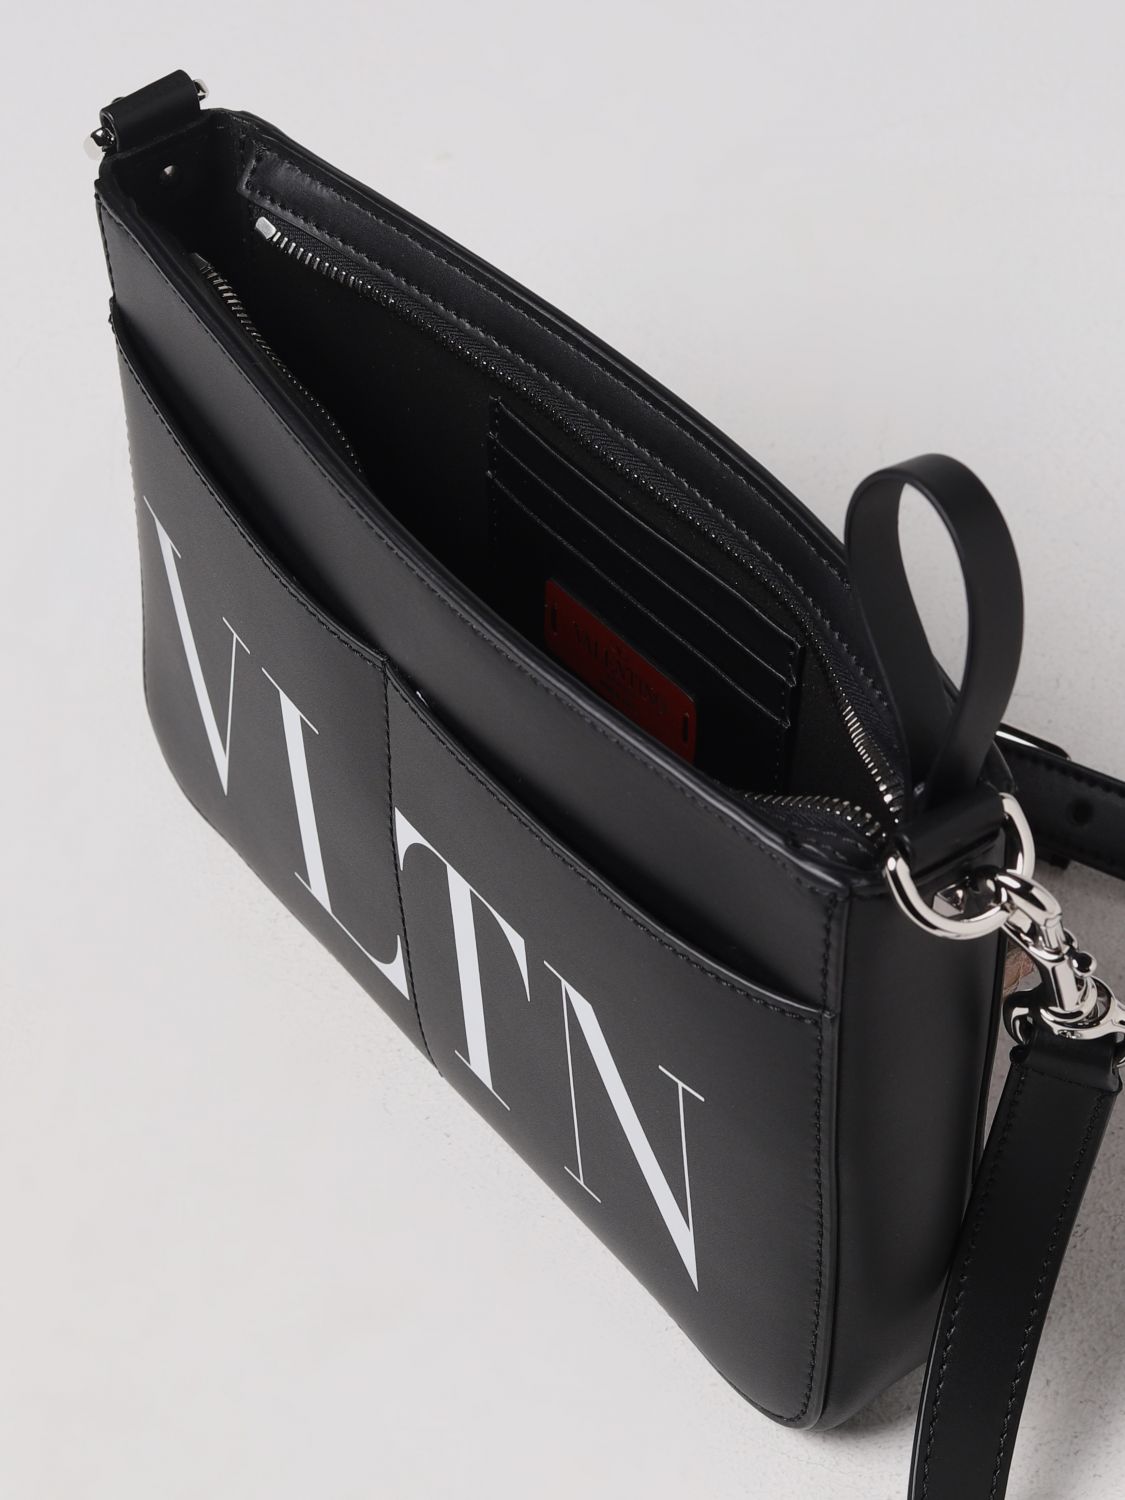 VALENTINO GARAVANI: VLTN leather bag - Black  Valentino Garavani shoulder  bag 2Y2B0704WJW online at